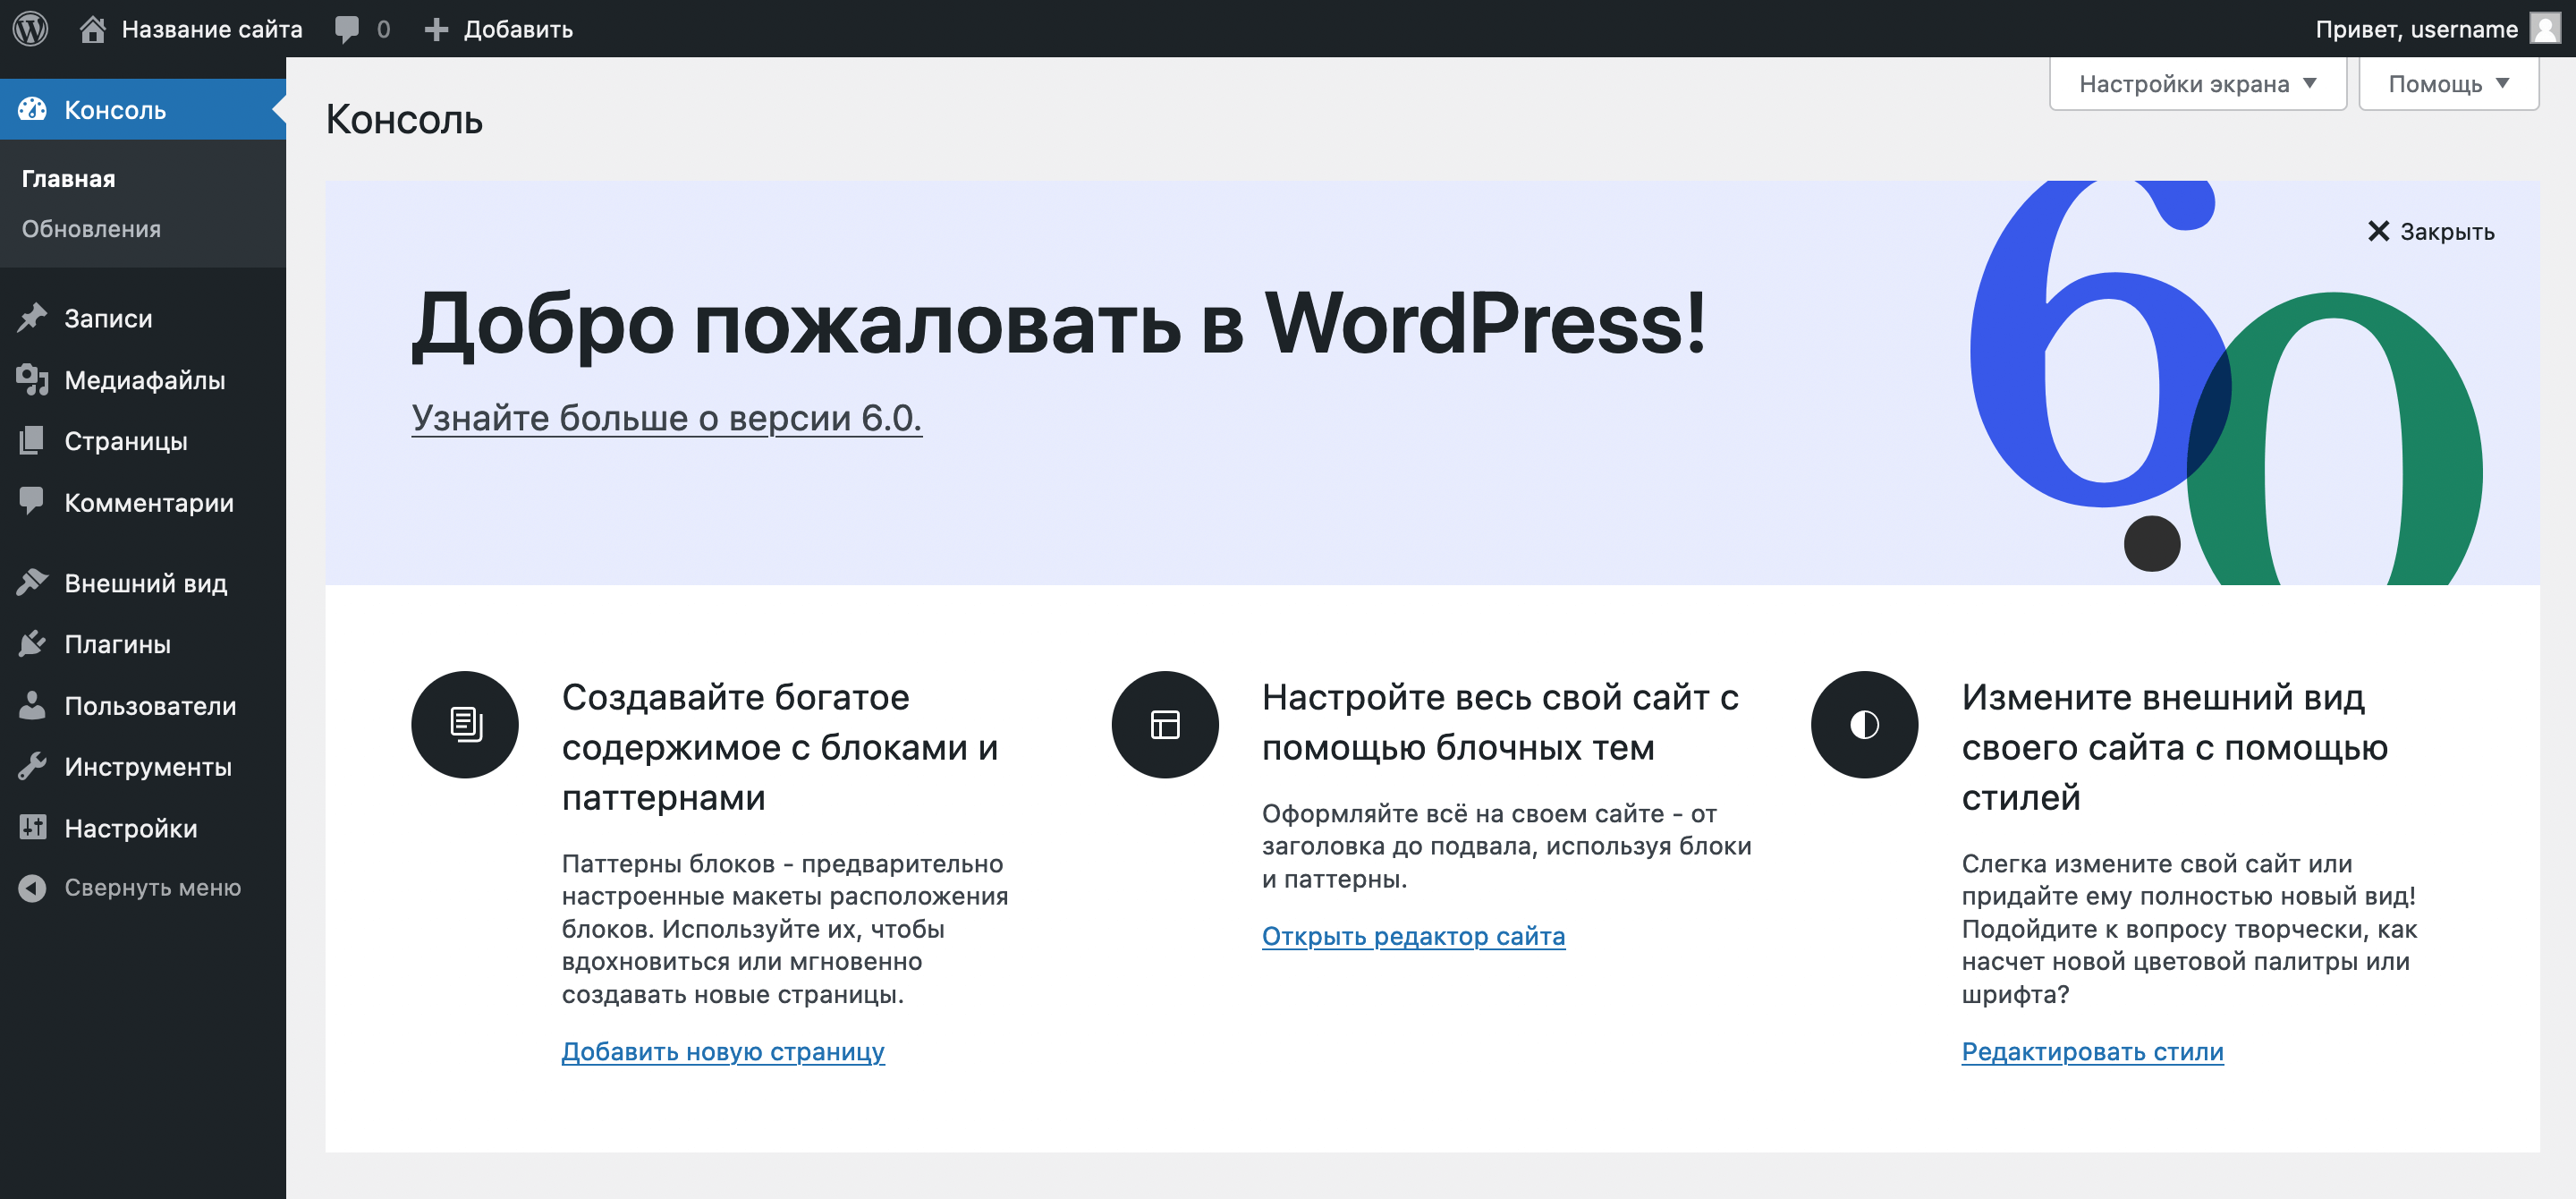 Как создать сайт на WordPress на локальном компьютере — Домашняя страница консоли